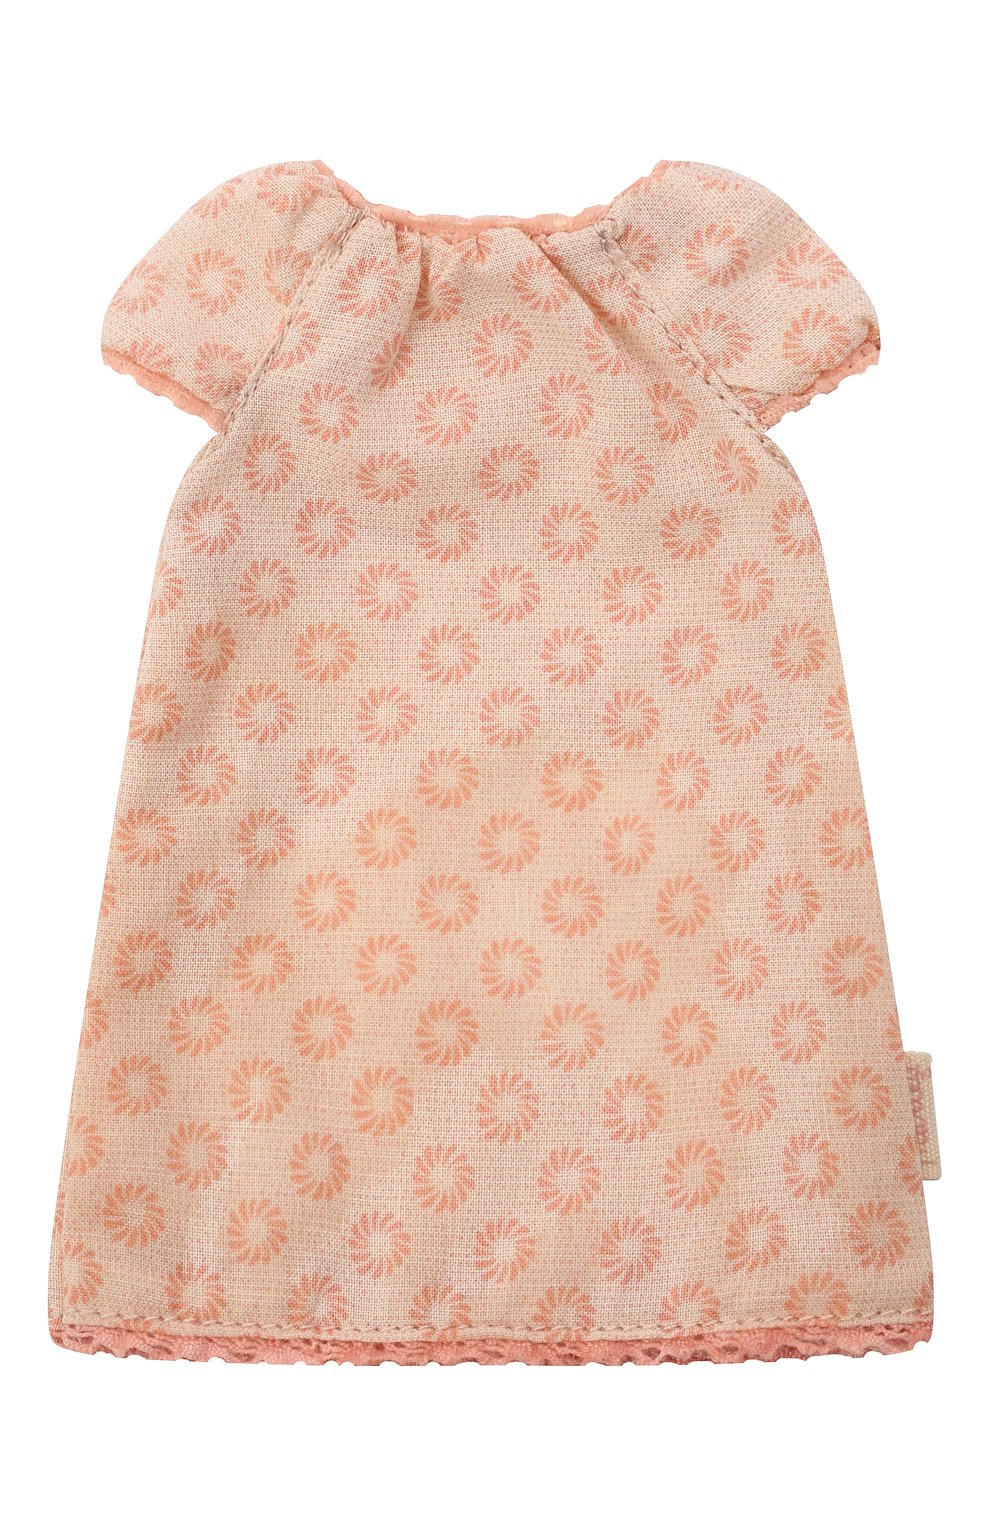 Детского одежда для игрушки ночная сорочка MAILEG розового �цвета, арт. 16-1101-01 | Фото 1 (Игрушки: Фигурки - одежда)